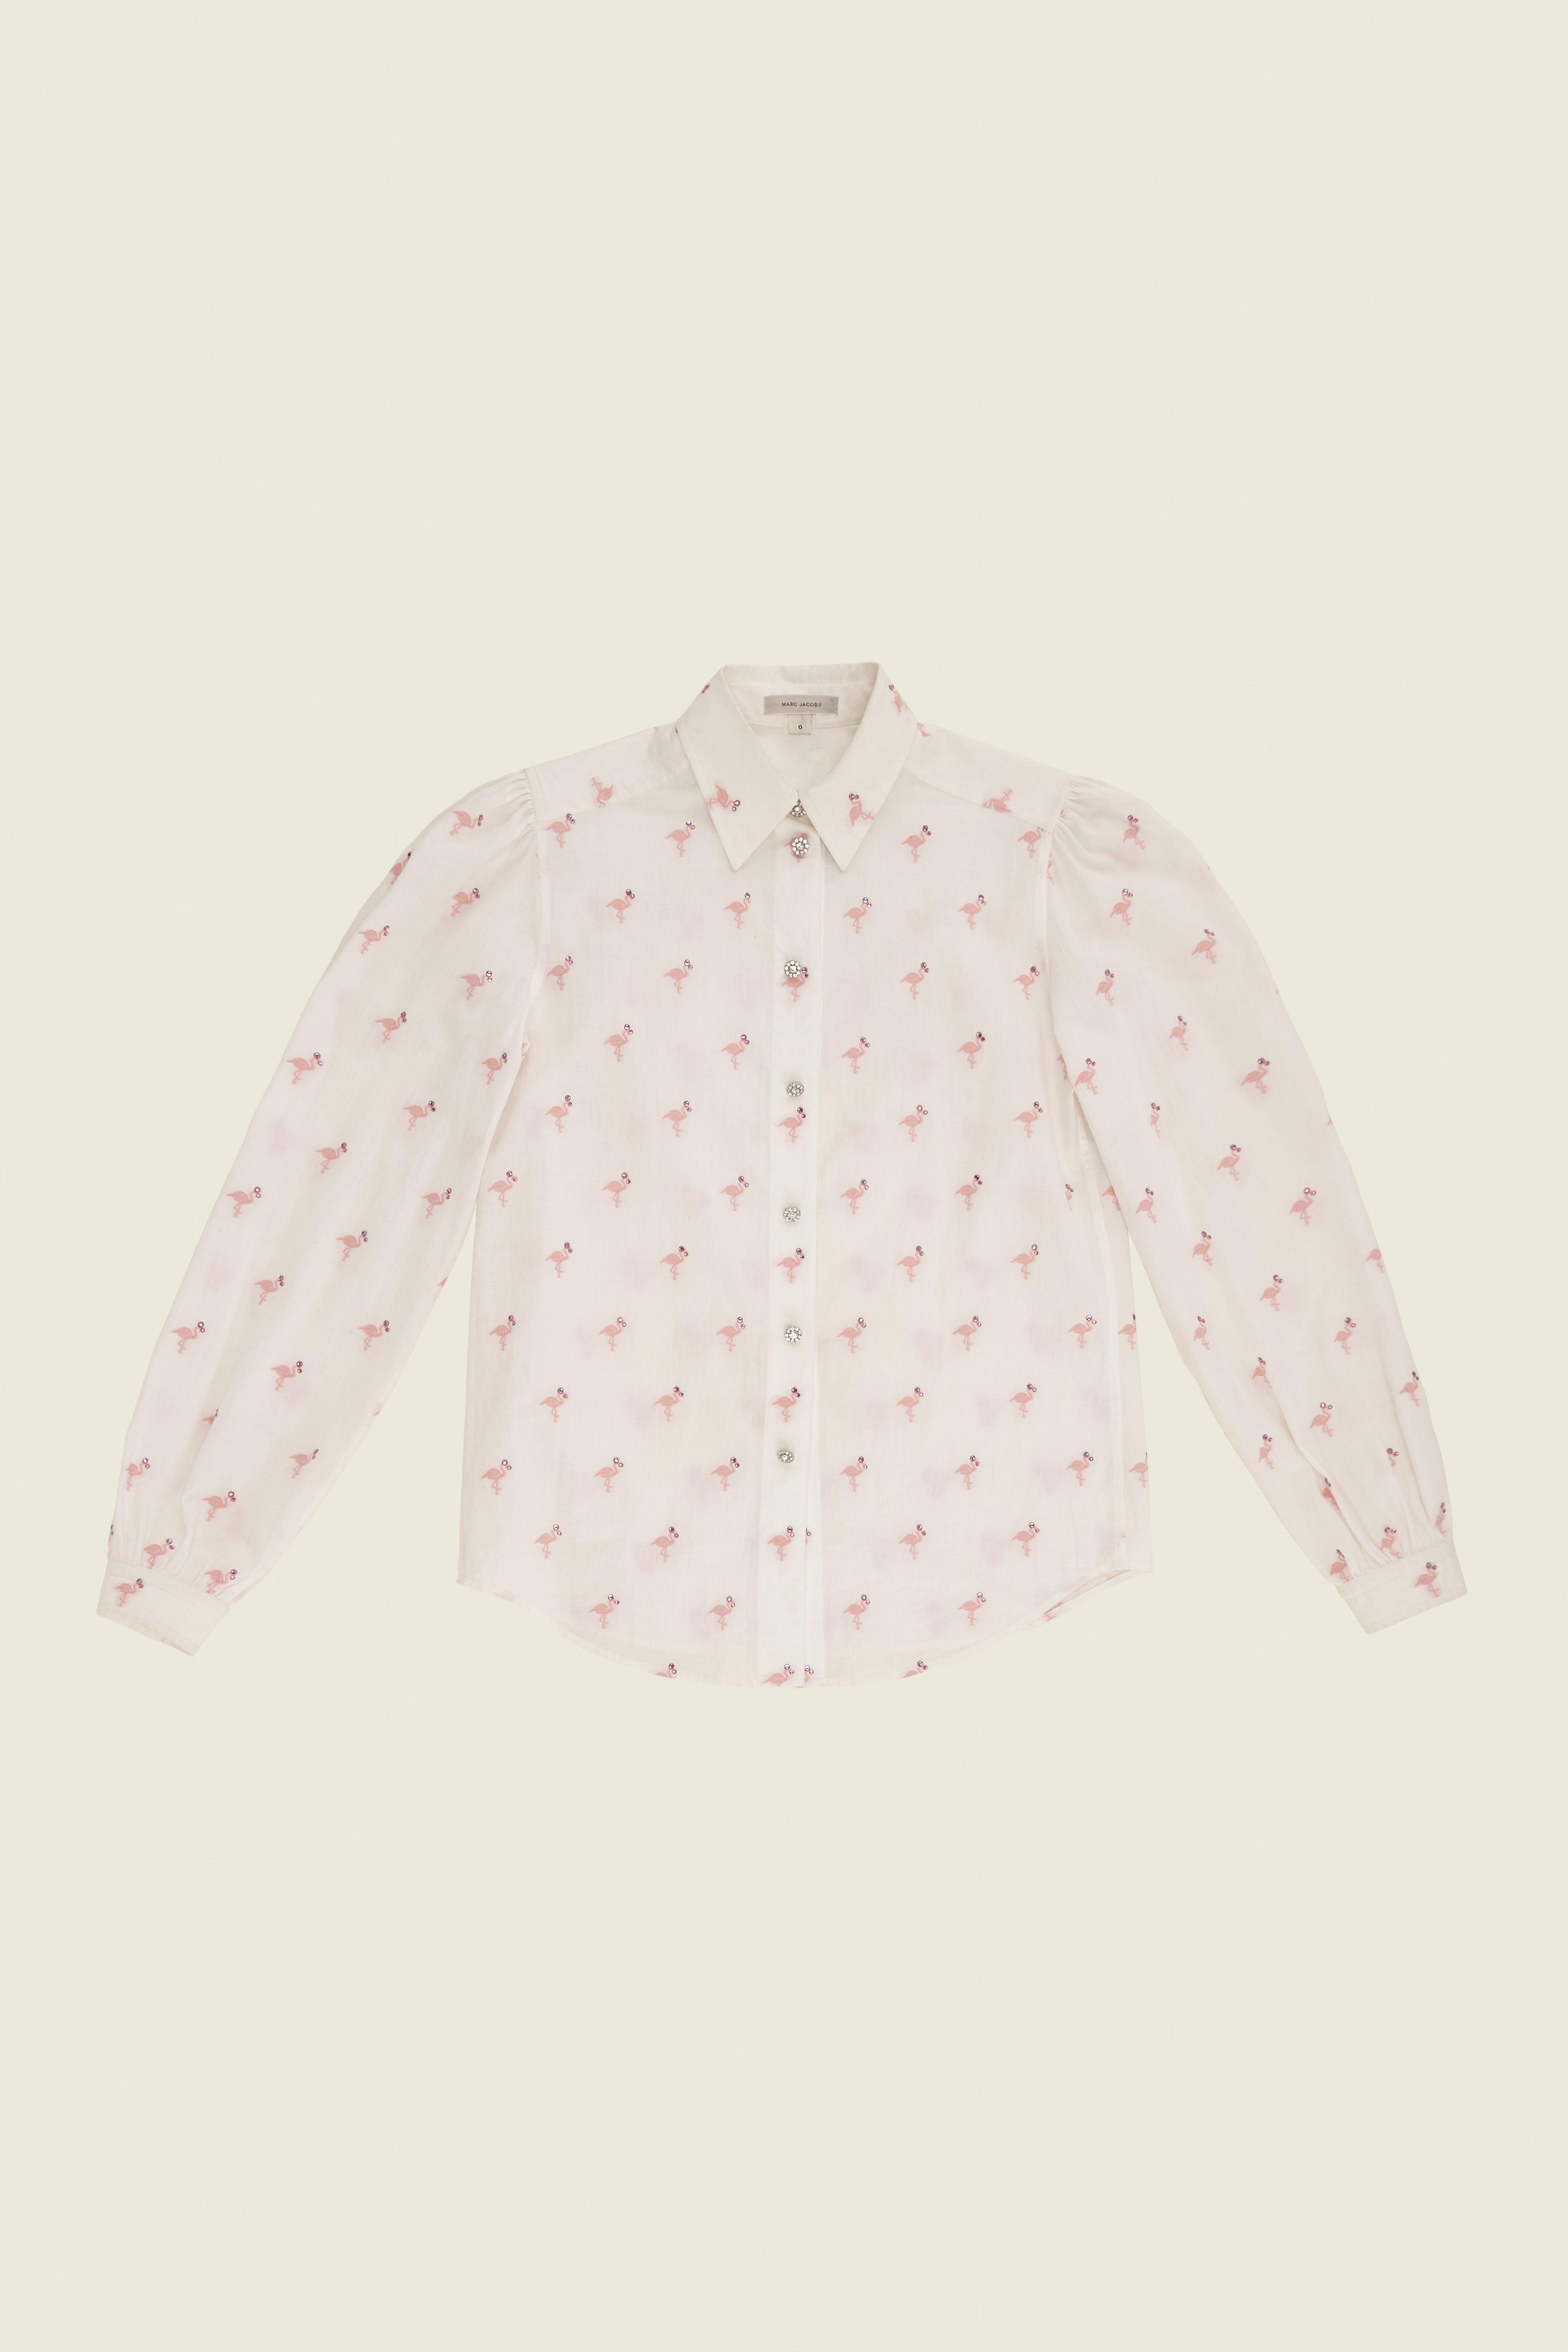 MARC JACOBS Flamingo Cotton Shirt, White/Pink | ModeSens